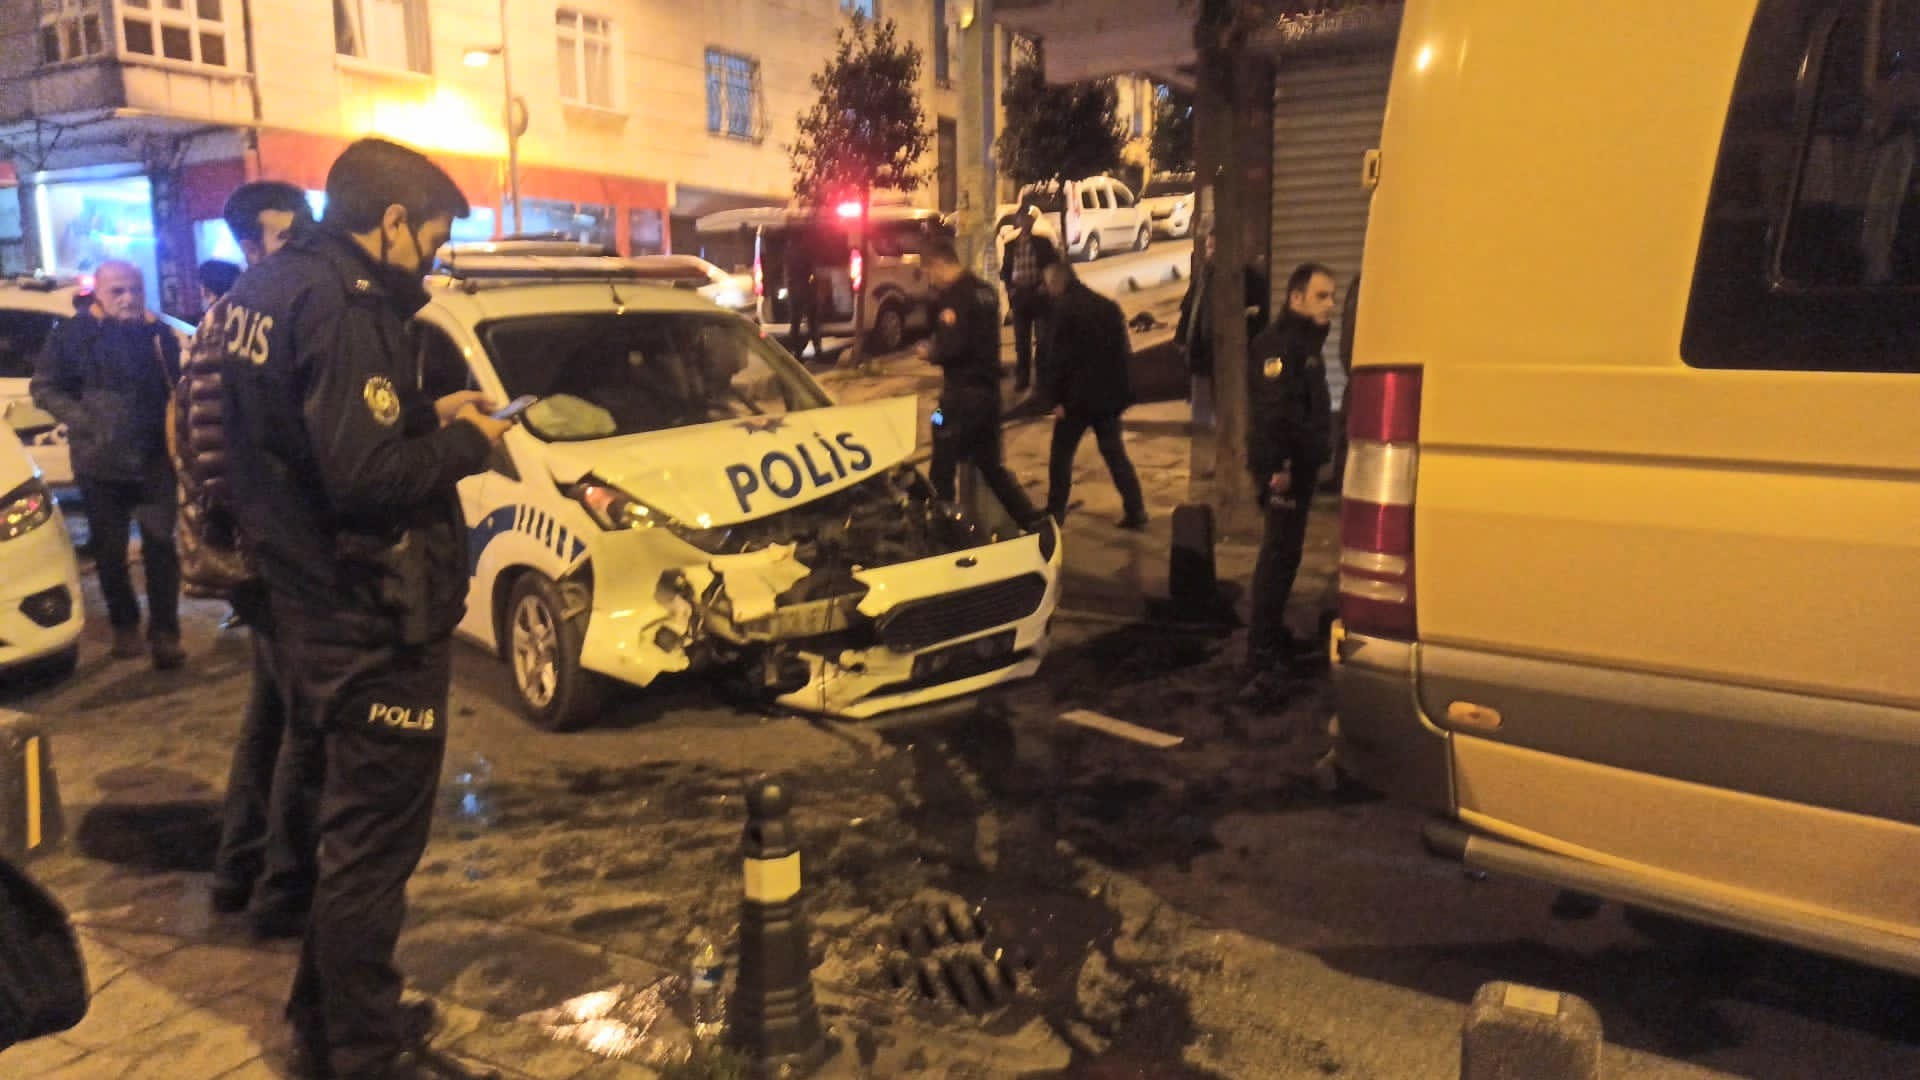 Güngören'de Polis otosu kaza yaptı 2 yaralı 